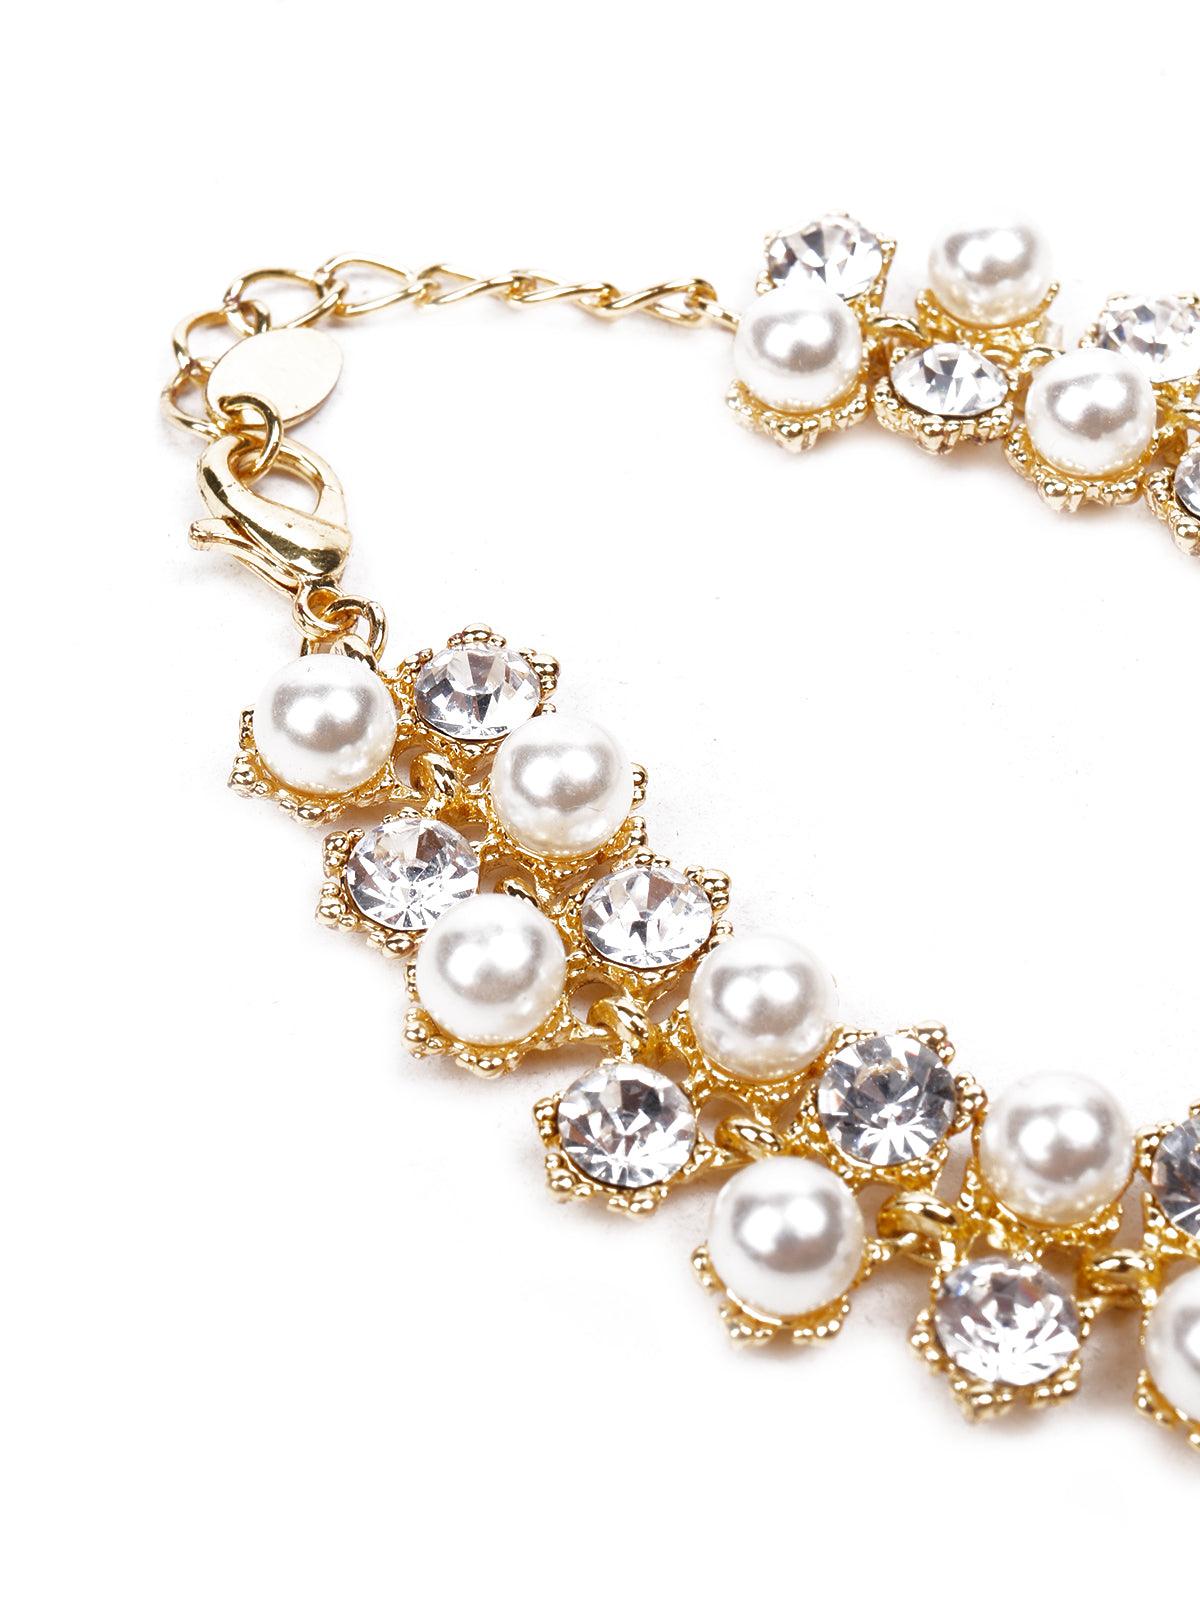 Gold bracelet embellished with crystals and pearls - Odette